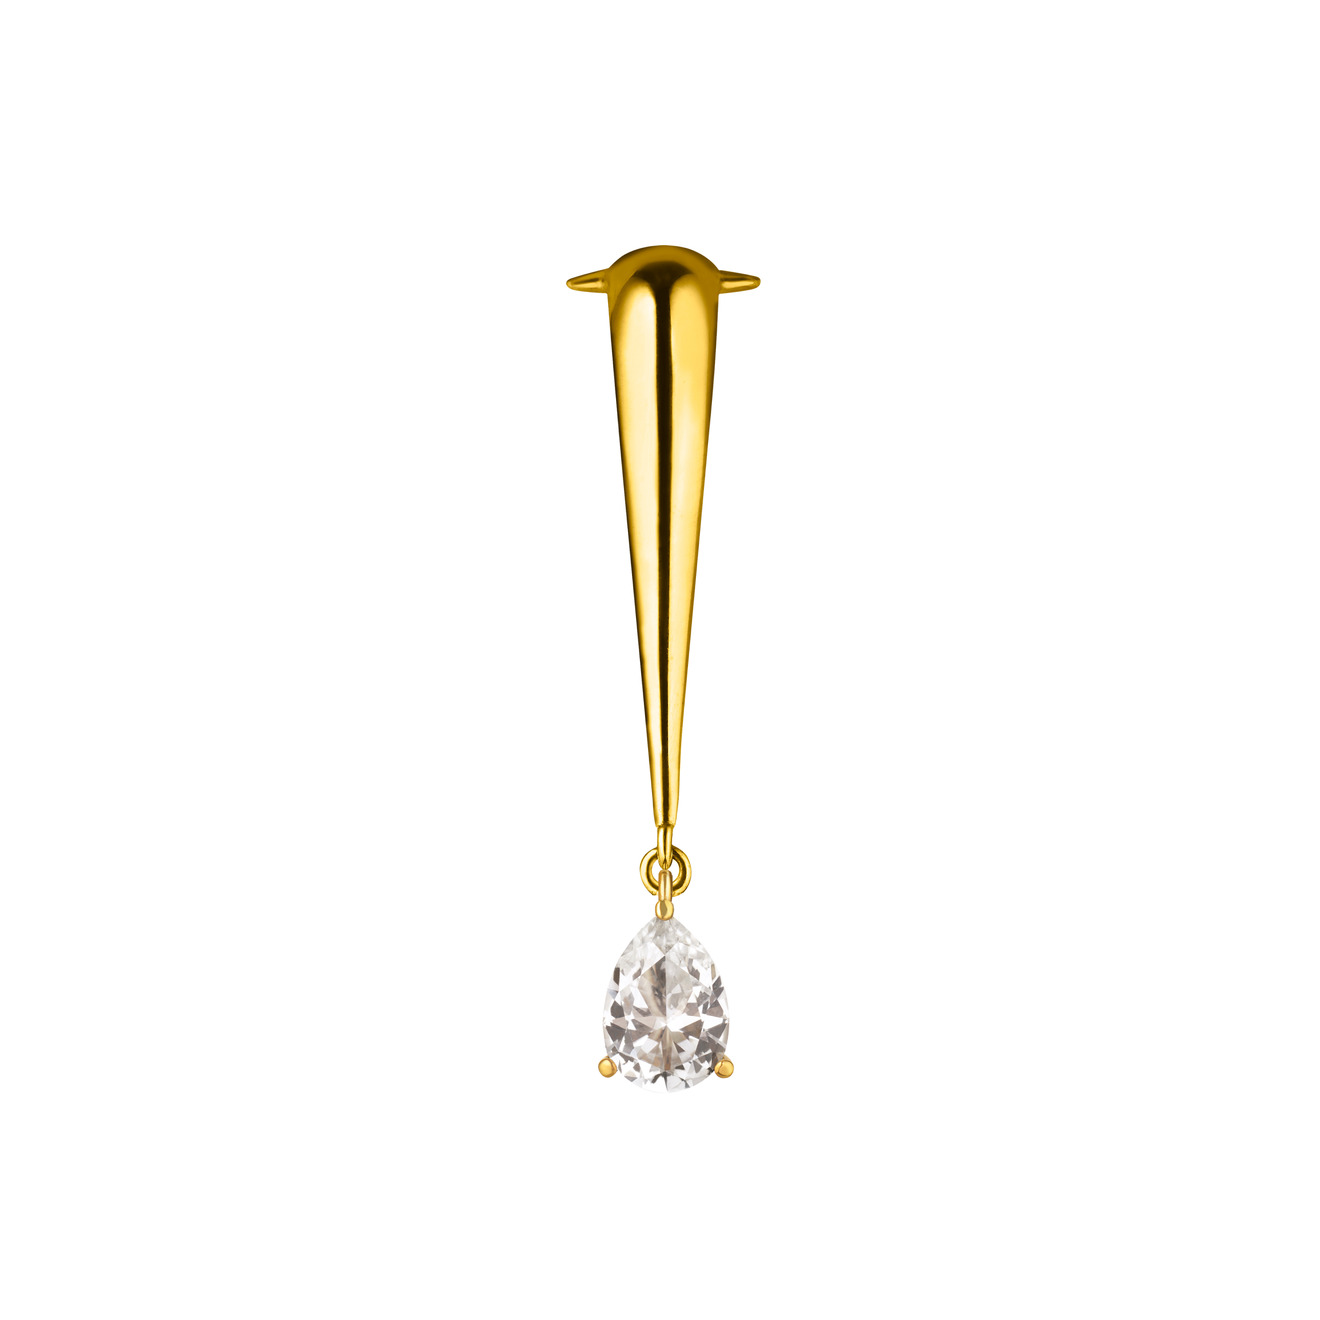 Vertigo Jewellery Lab Позолоченный клаймбер VENENUM CLIMBER TOPAZ из серебра с топазом vertigo jewellery lab кольцо hexo из белого золота с топазом авторской огранки